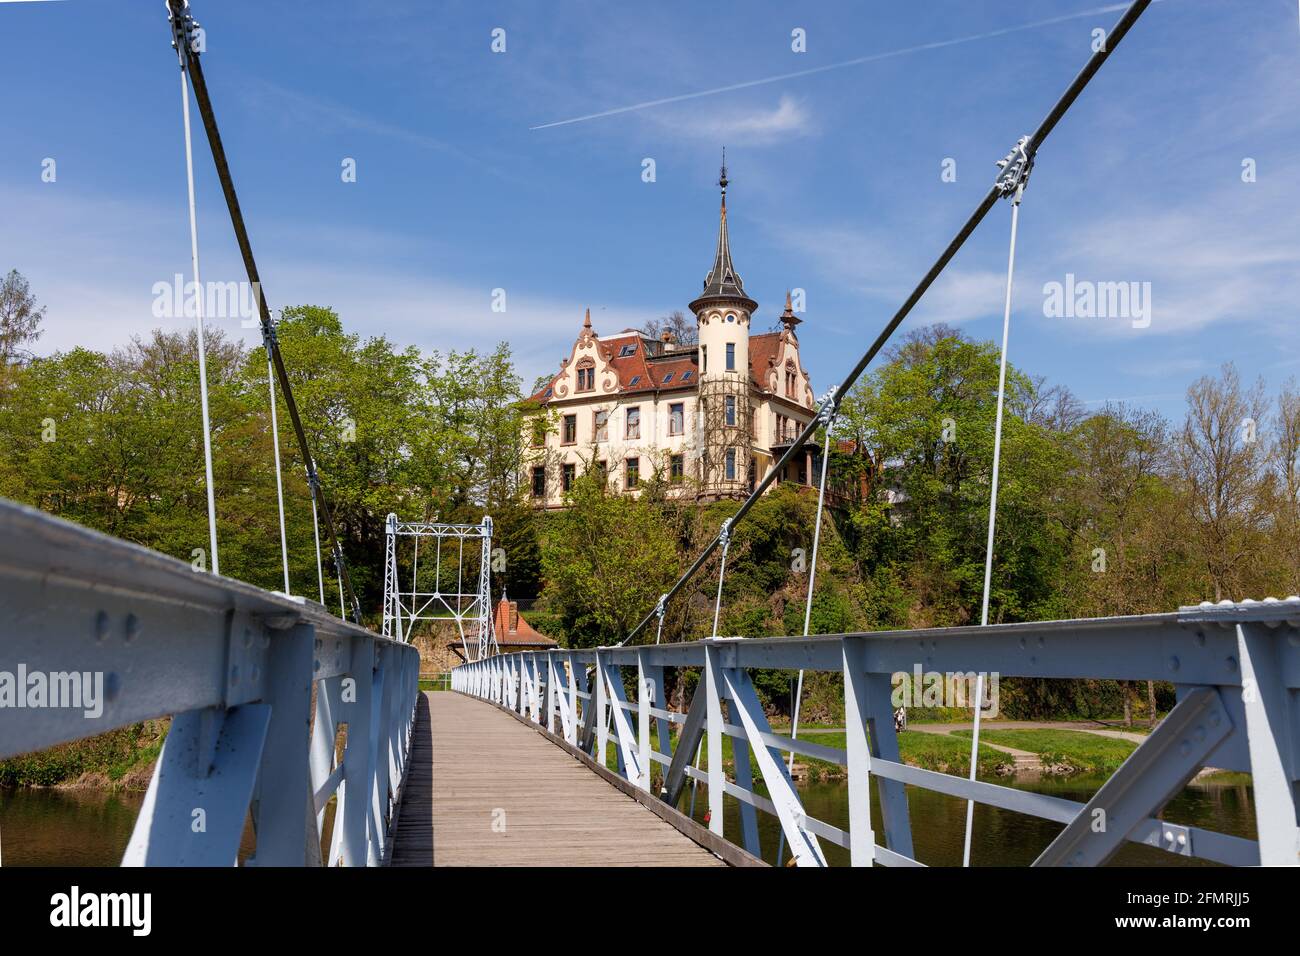 Grimma, Sachsen, Deutschland- 05 11 2021, die kleine Stadt an der Mulde ist bekannt als die "Perle des Muldetals"- Hängebrücke in der Nähe der Geschichte Stockfoto